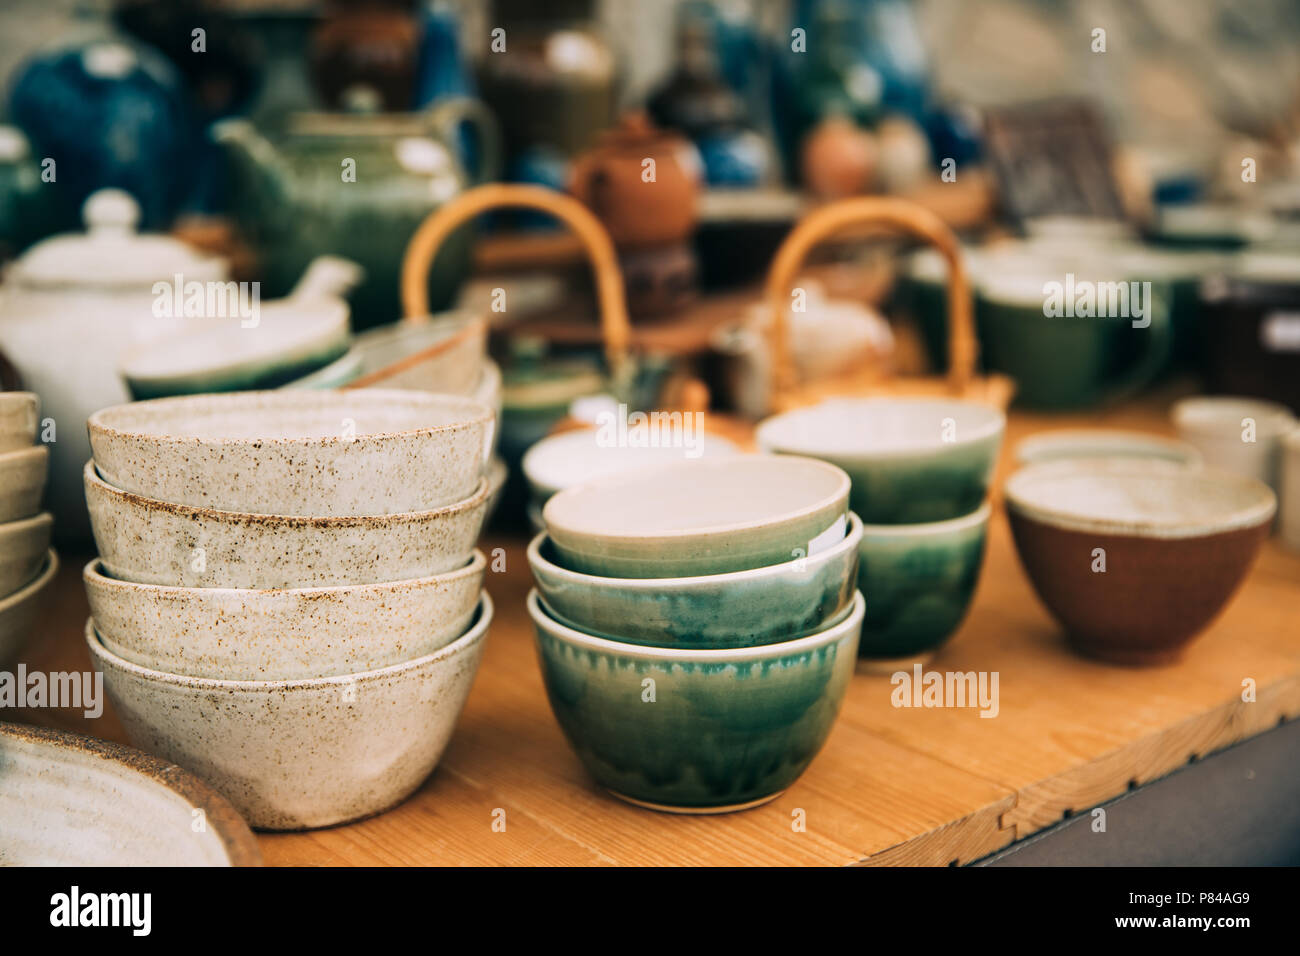 Keramik Ton Kunsthandwerk. Keramik Geschirr in den Markt. Schalen in  verschiedenen Größen, Farben und Formen Stockfotografie - Alamy